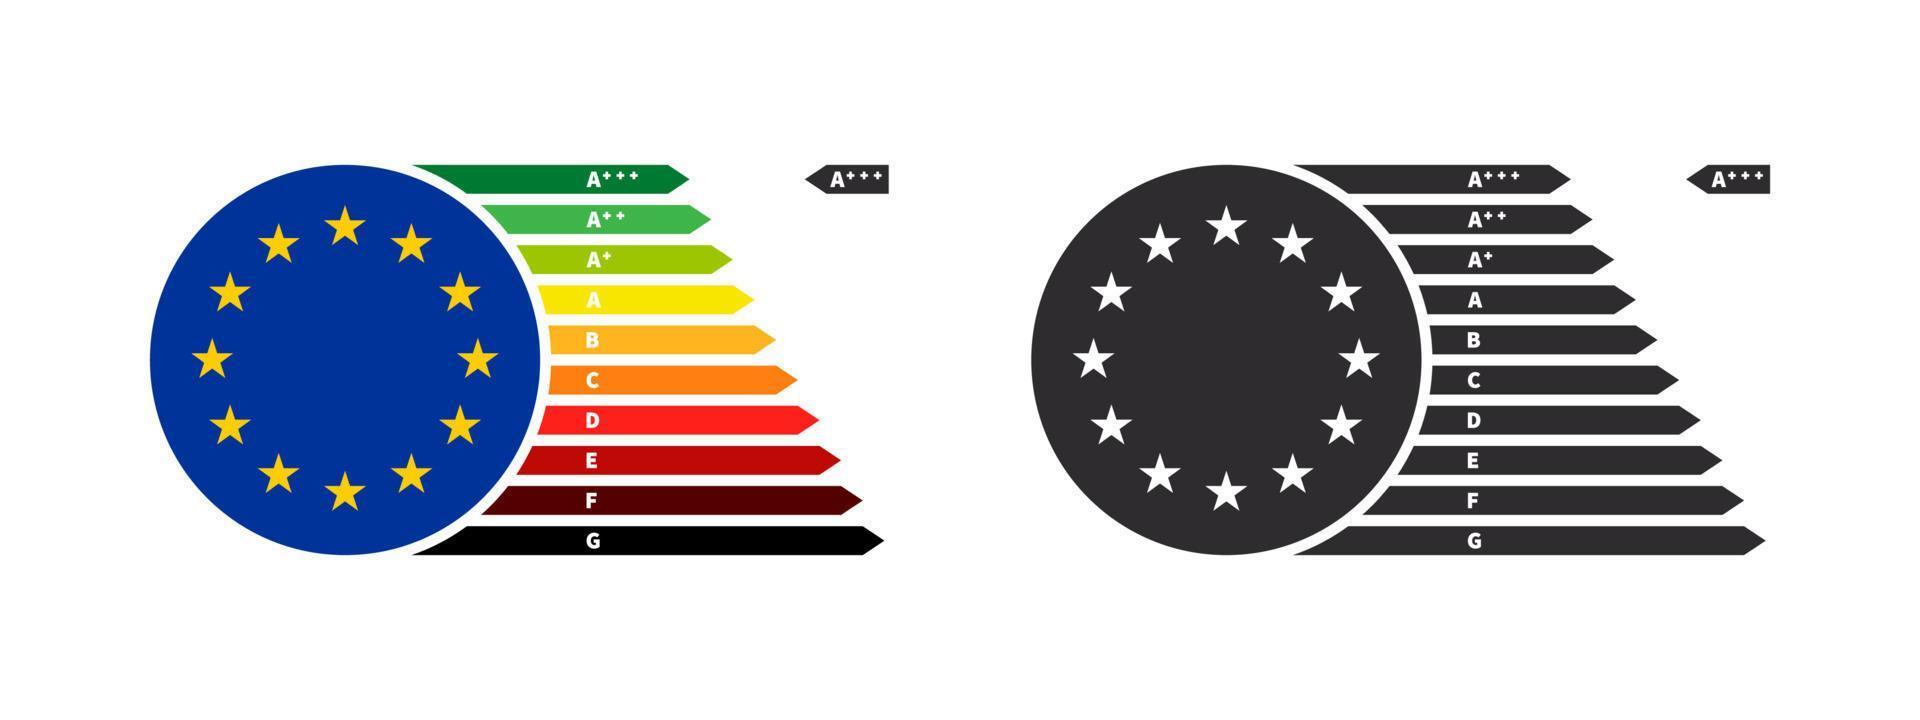 Europese energie rendement klassen. energie rendement beoordeling. energie rendement pijlen. vector illustratie